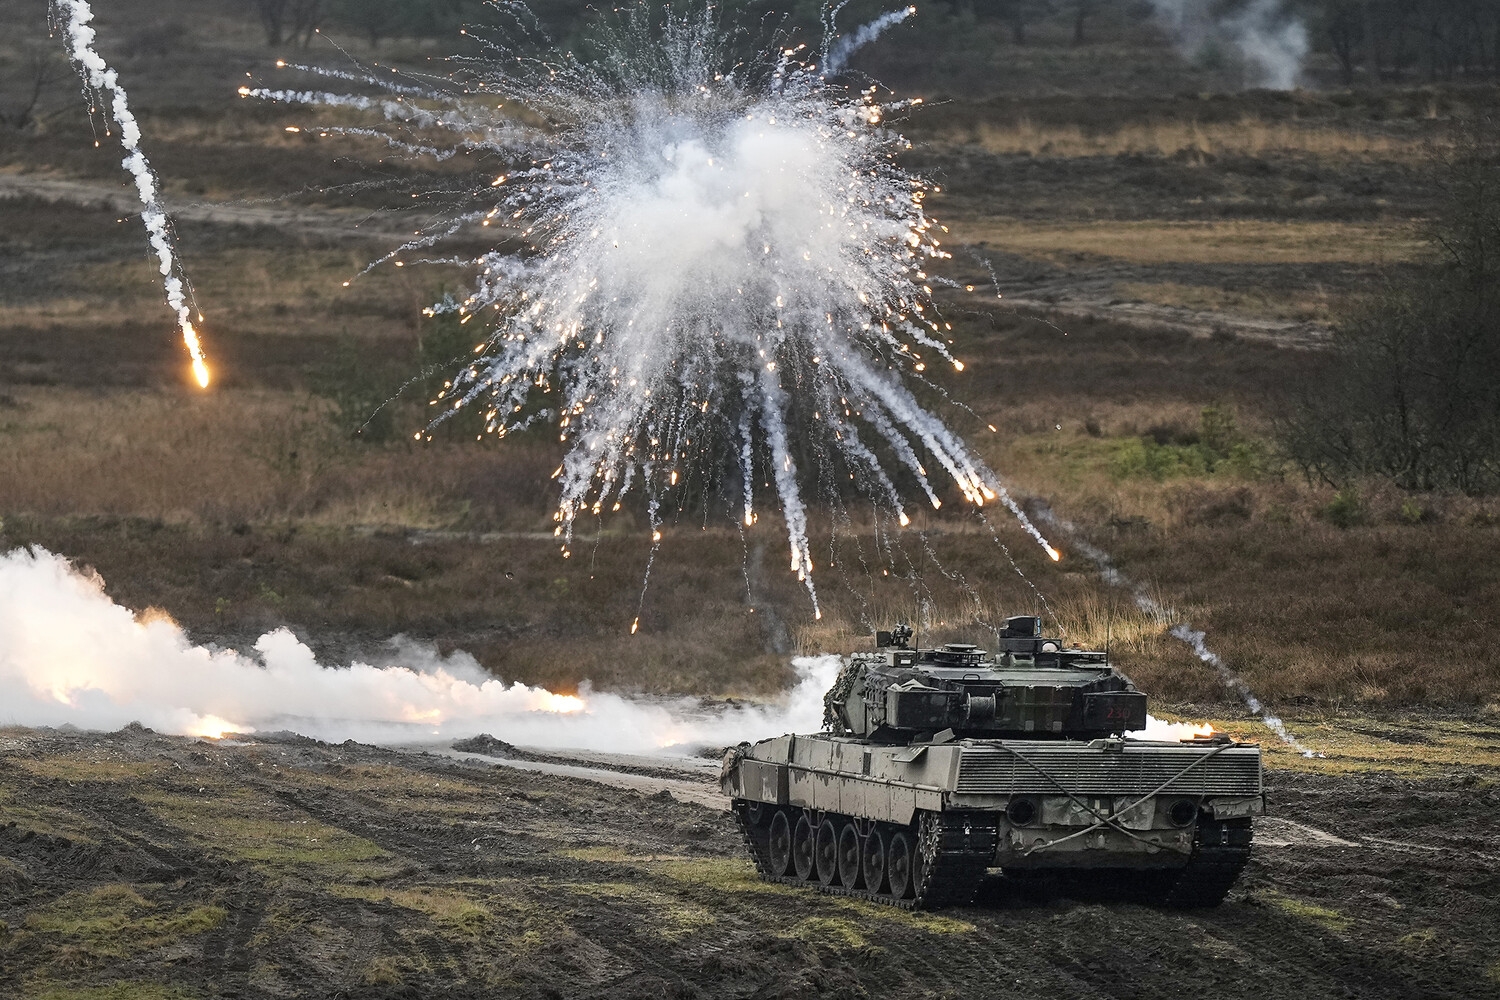 ВС России уничтожили восемь танков Leopard